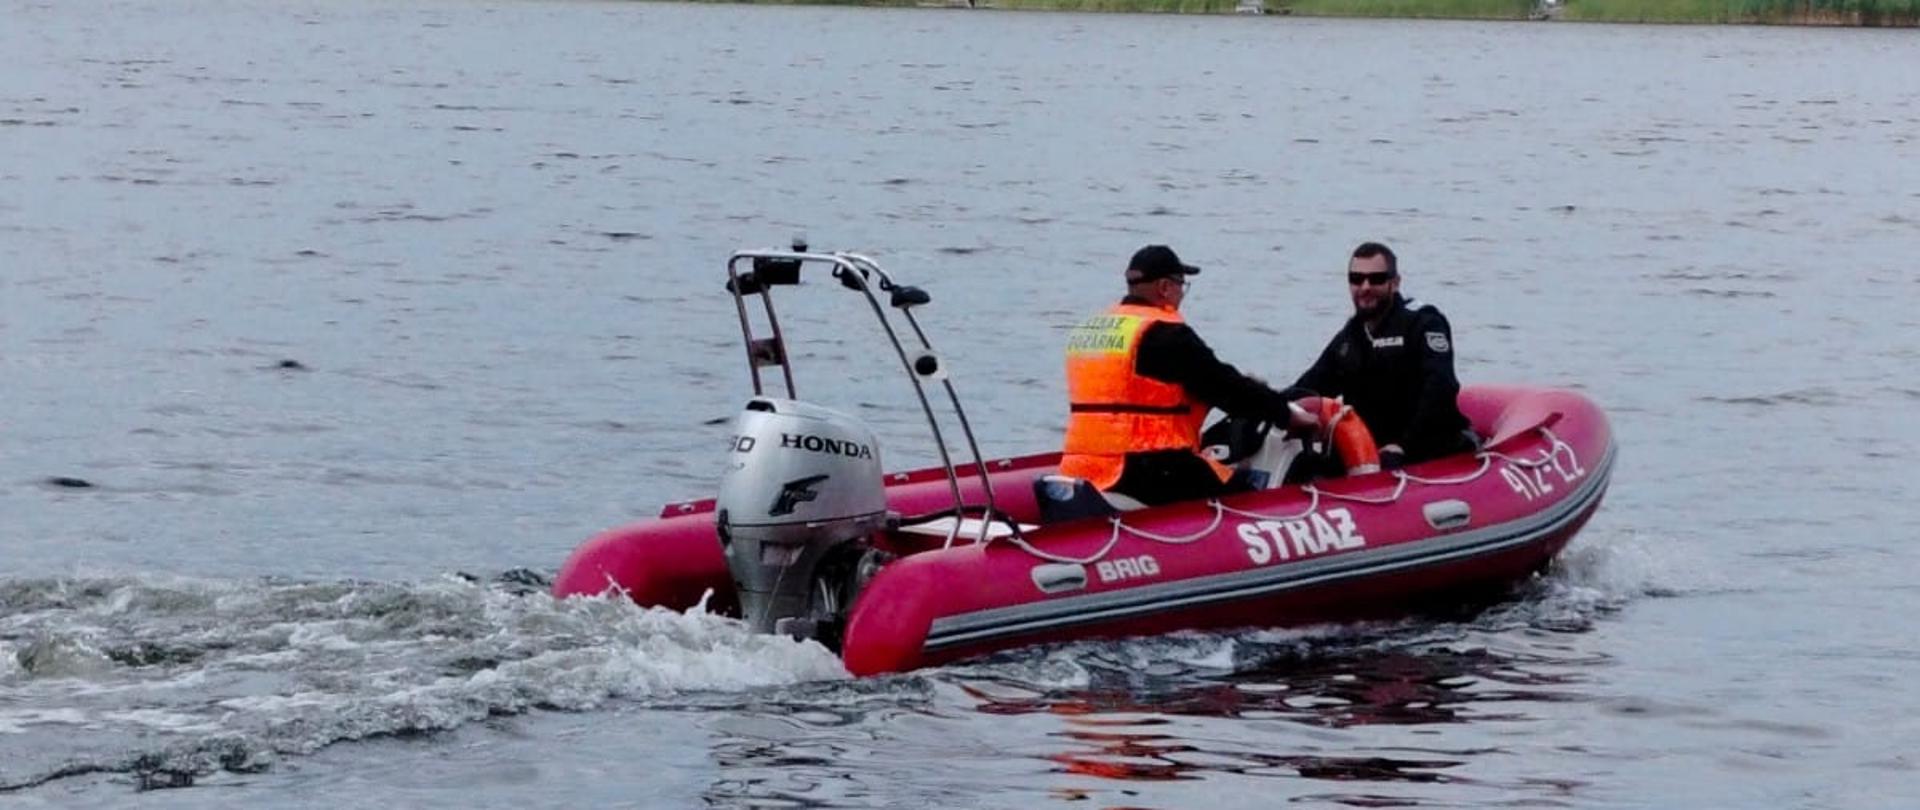 Strażak wraz z policjantem patrolują na łódce jezioro